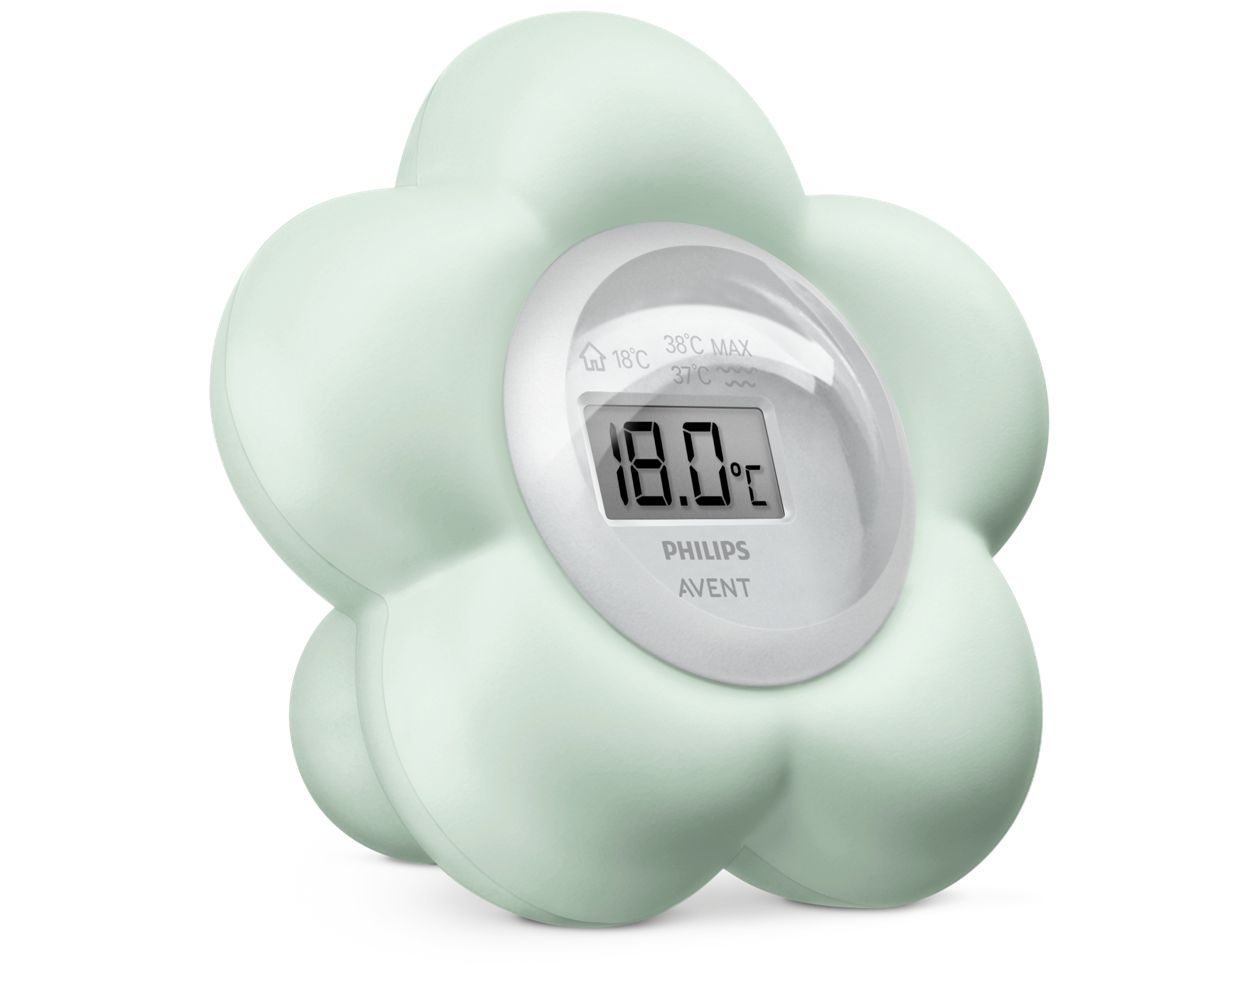 Philips Avent Thermomètre numérique de bain pour bébé, étanche et